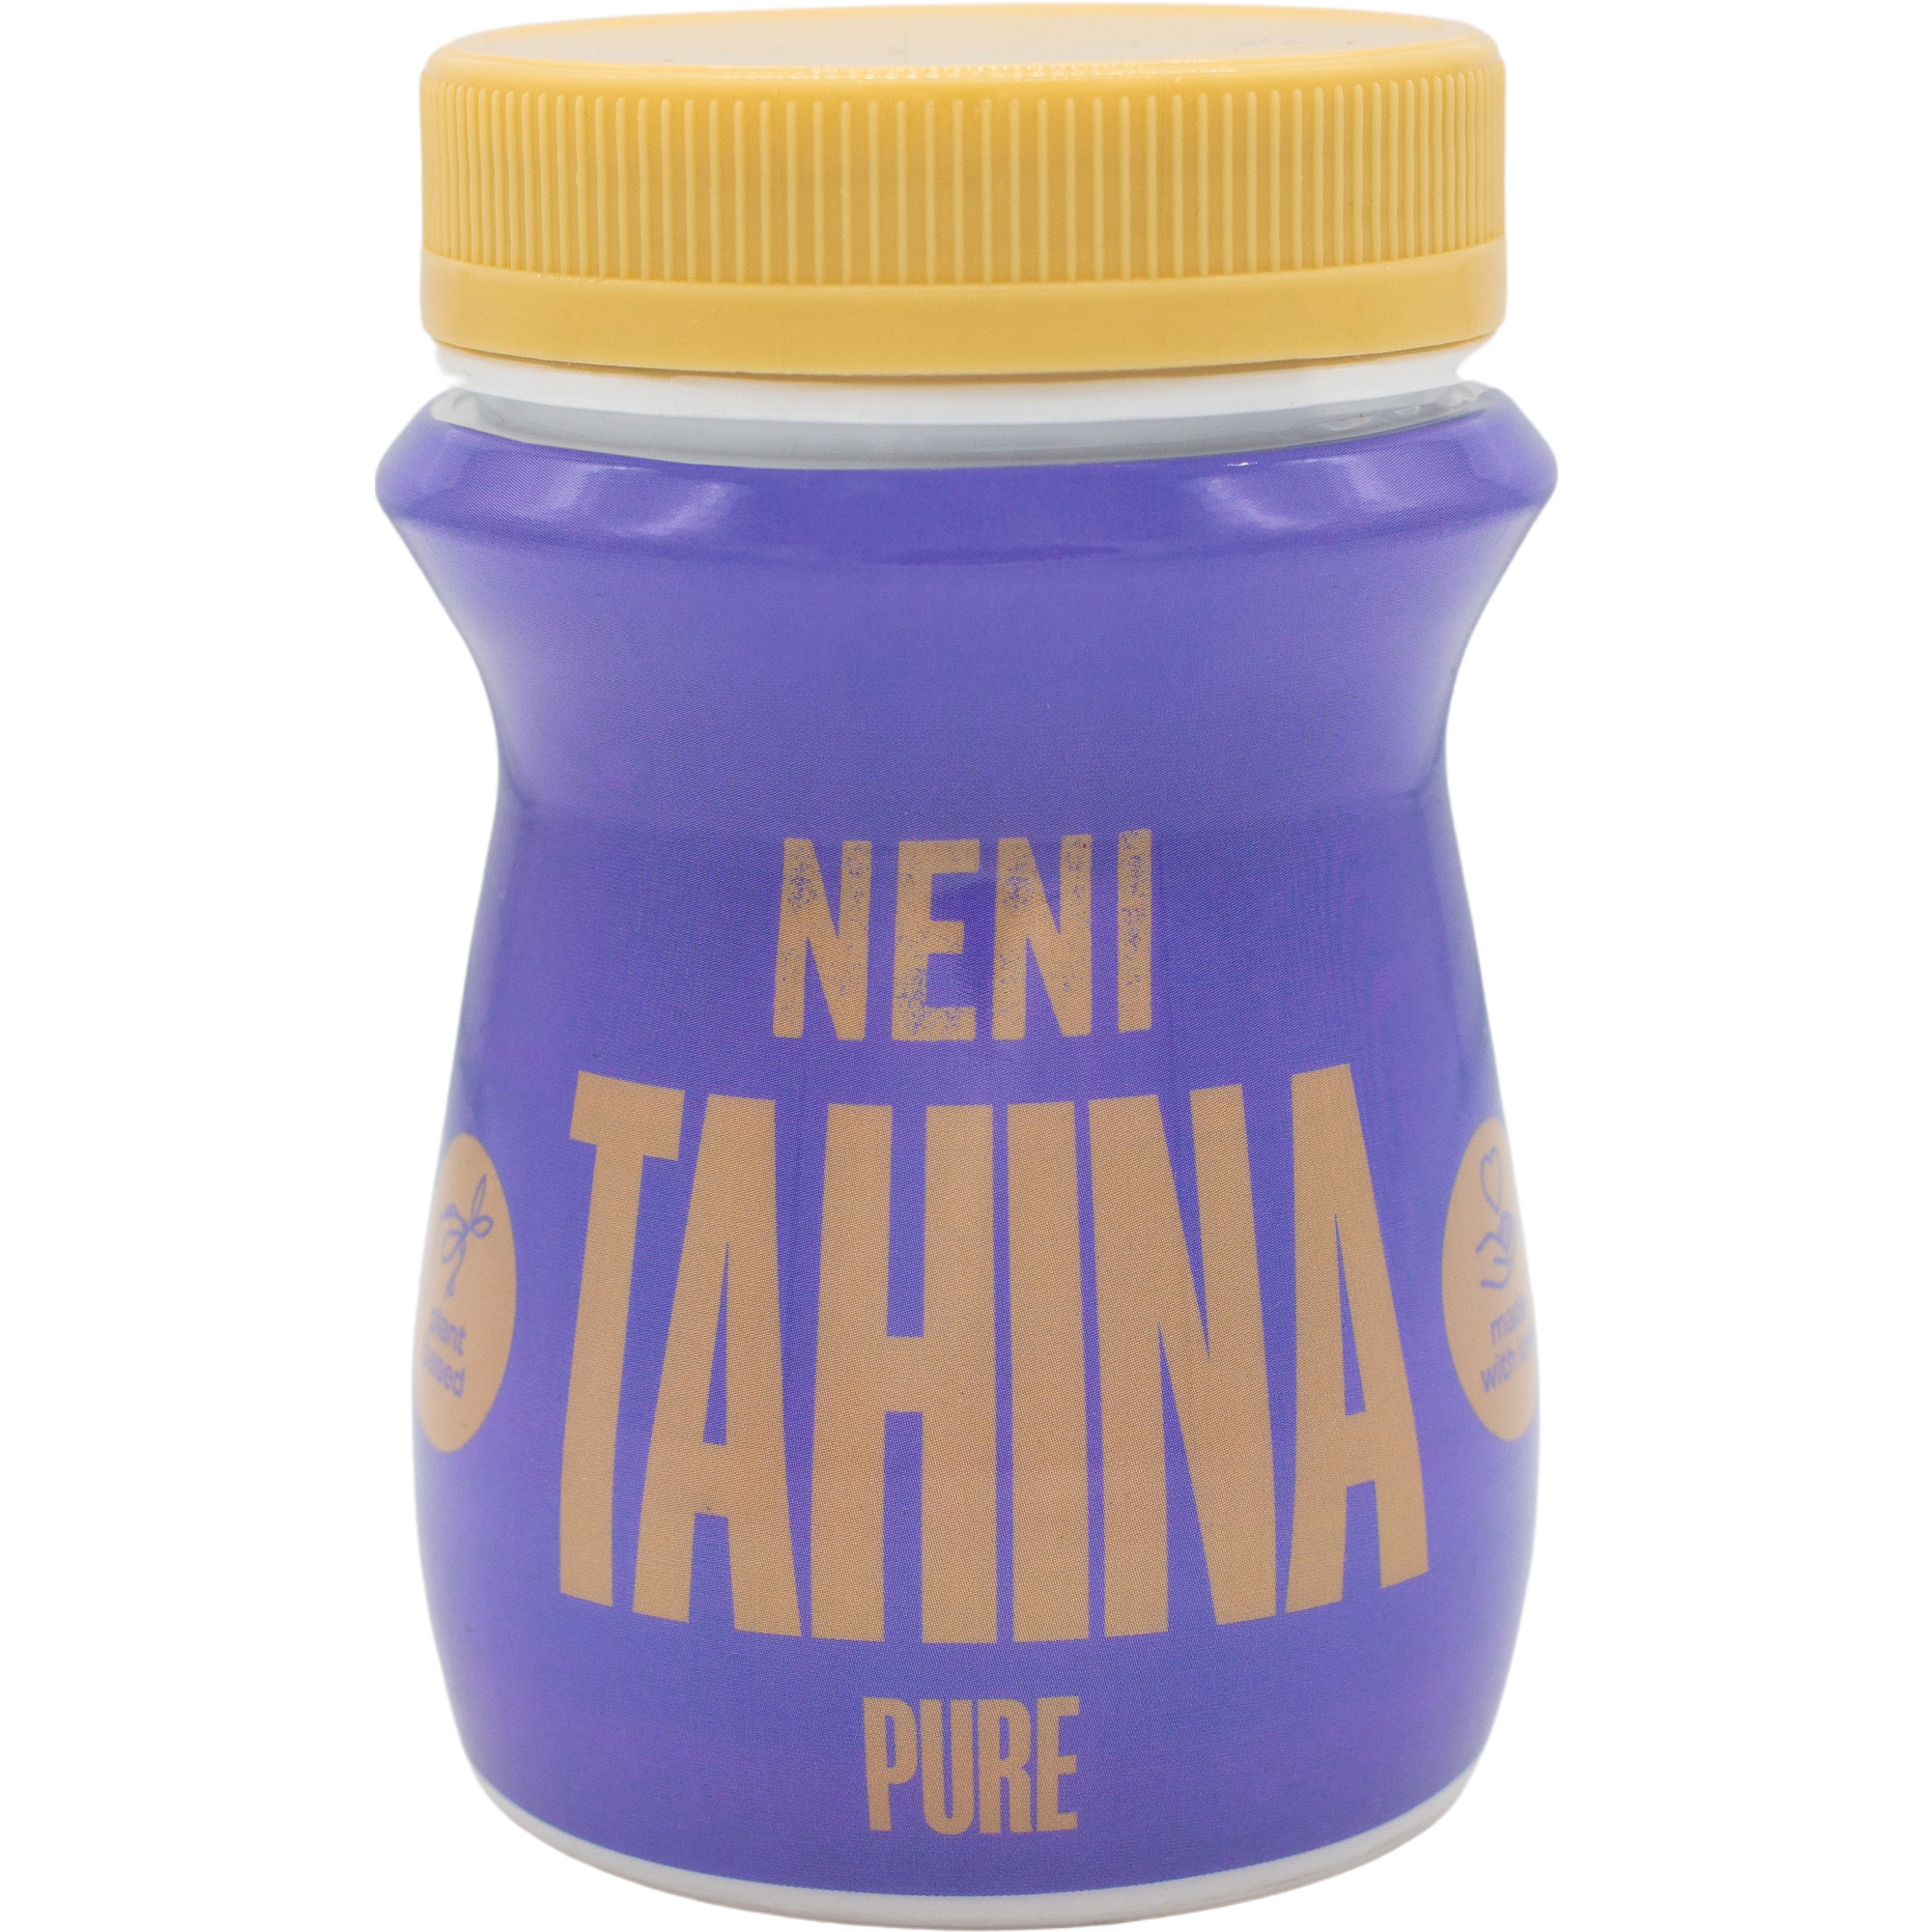 Neni Tahina Pure 250g